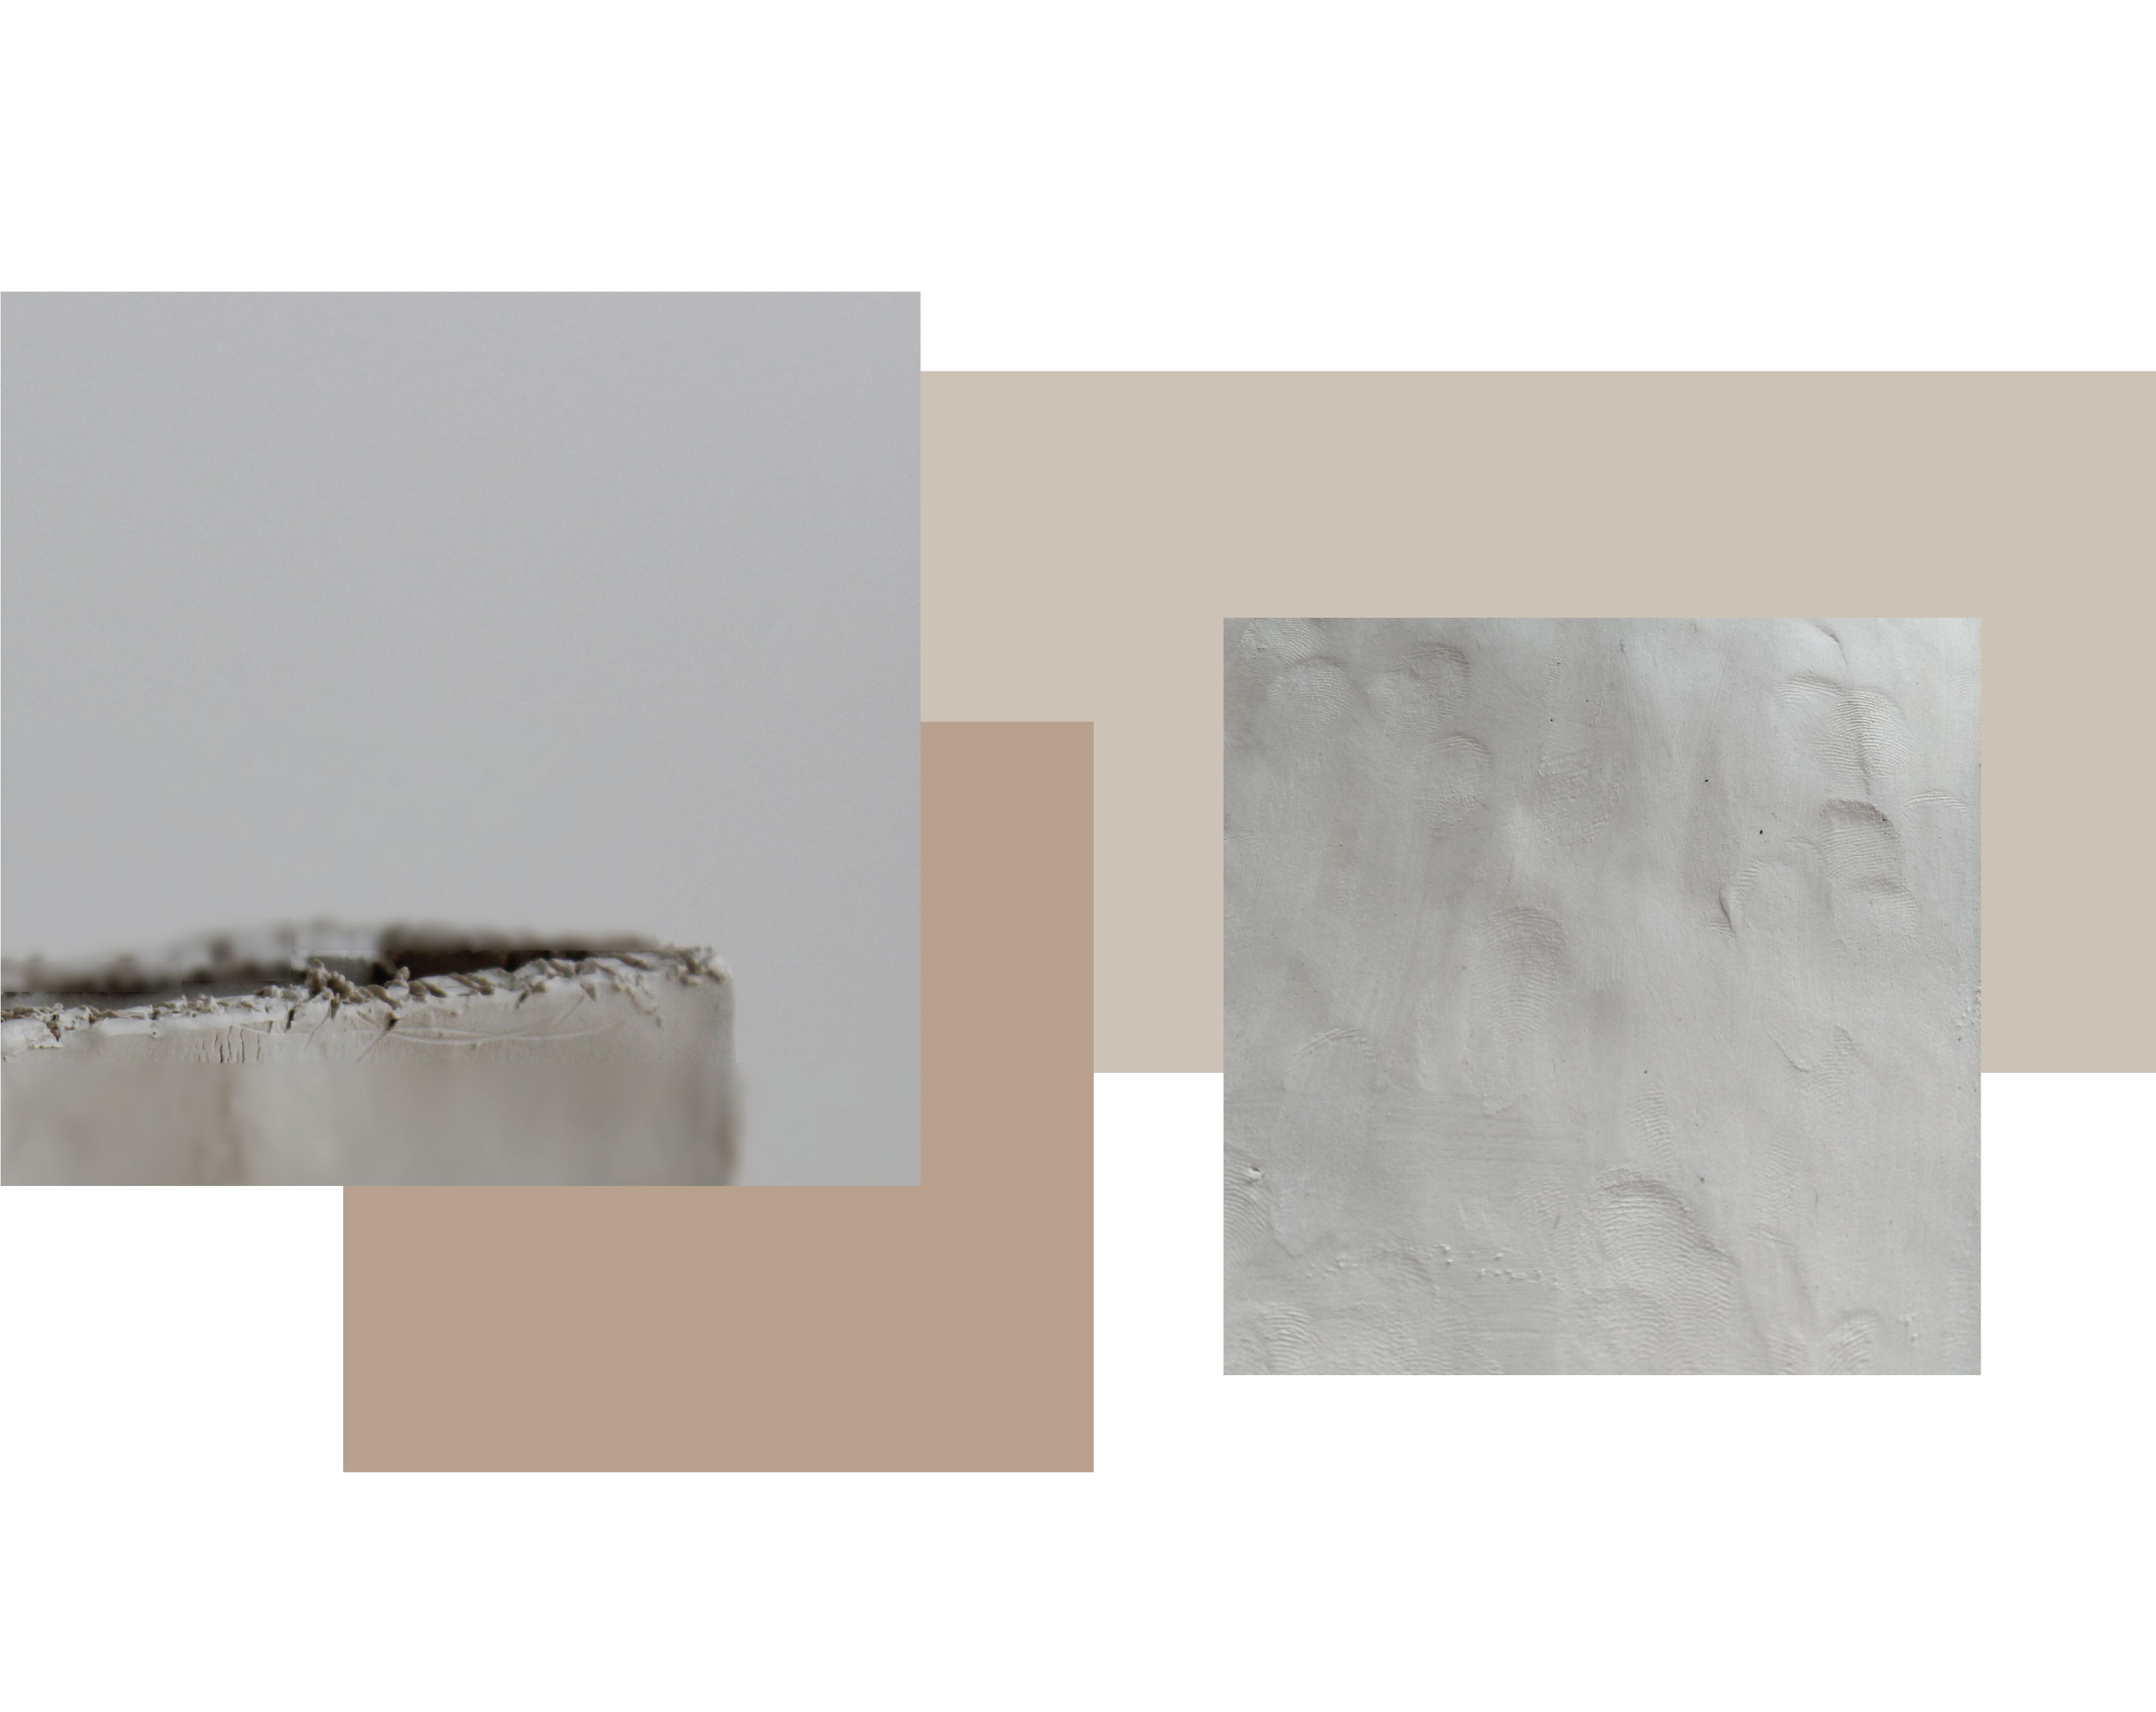 dva obrázky. jeden ukazuje zblízka poškrábaný okraj hlíny. Jeden ukazuje detail na otisky prstů na mokrém povrchu kameninové hlíny.